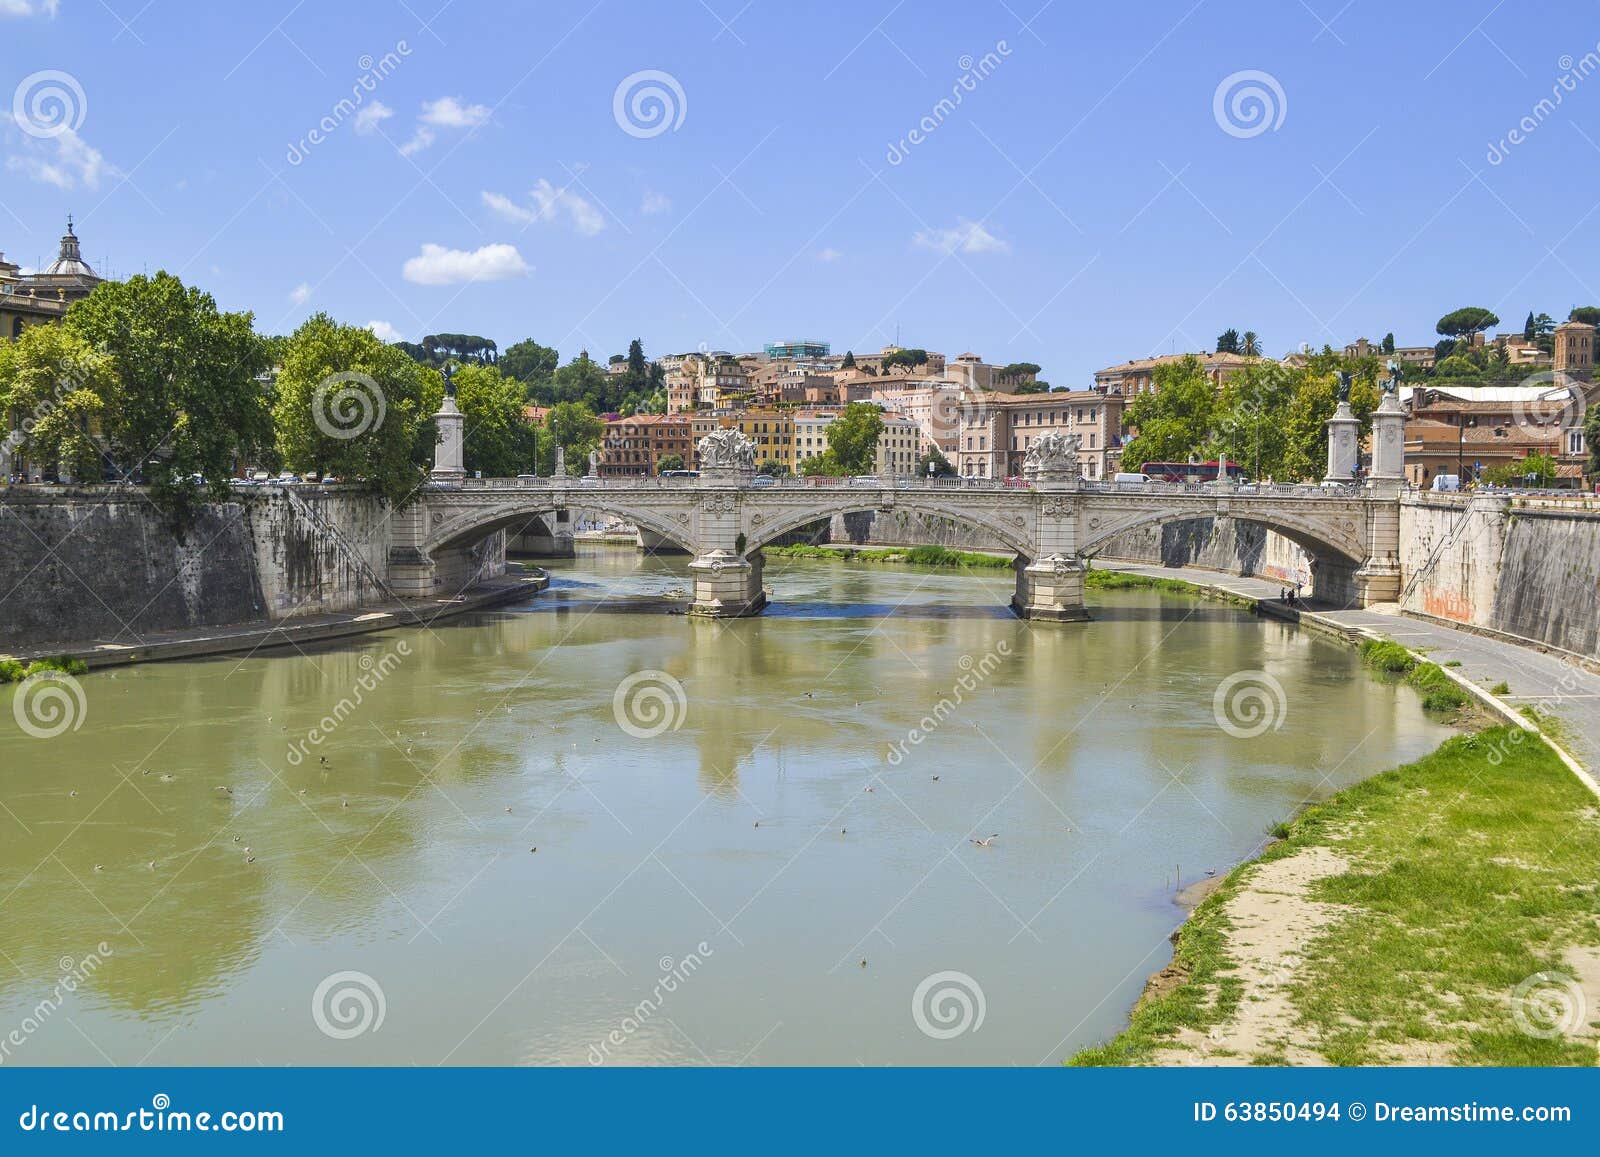 Rom-Stadt. Brücke und Fluss in Rom, Italien